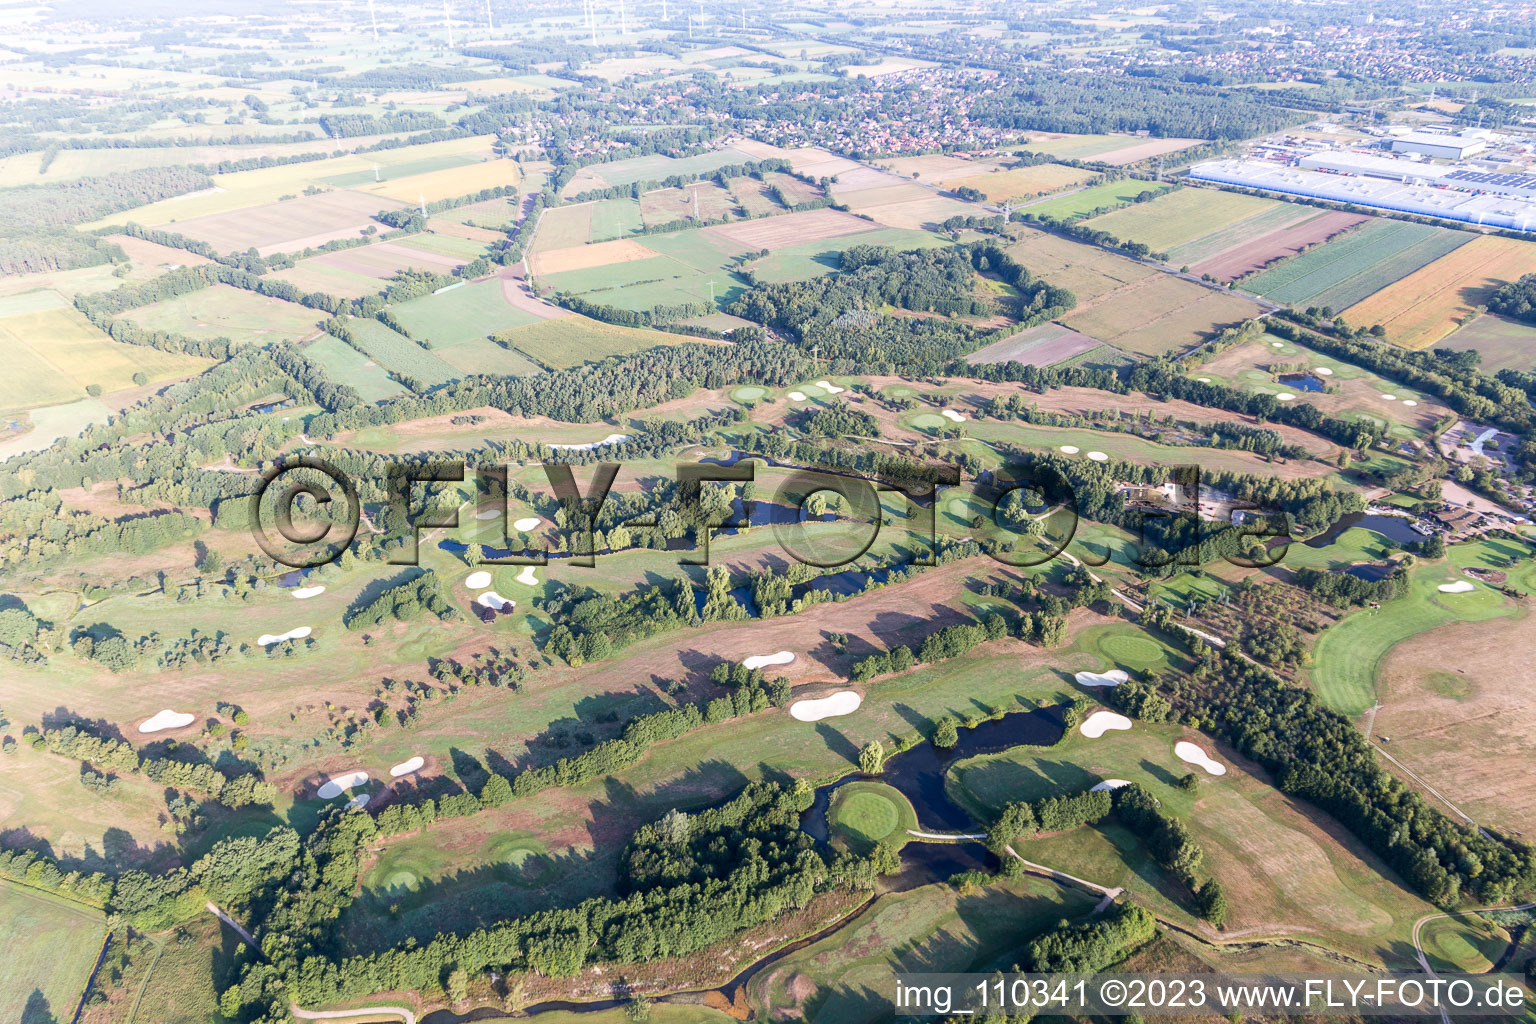 Image drone de Terrain du parcours de golf Green Eagle à Winsen (Luhe) dans le département Basse-Saxe, Allemagne